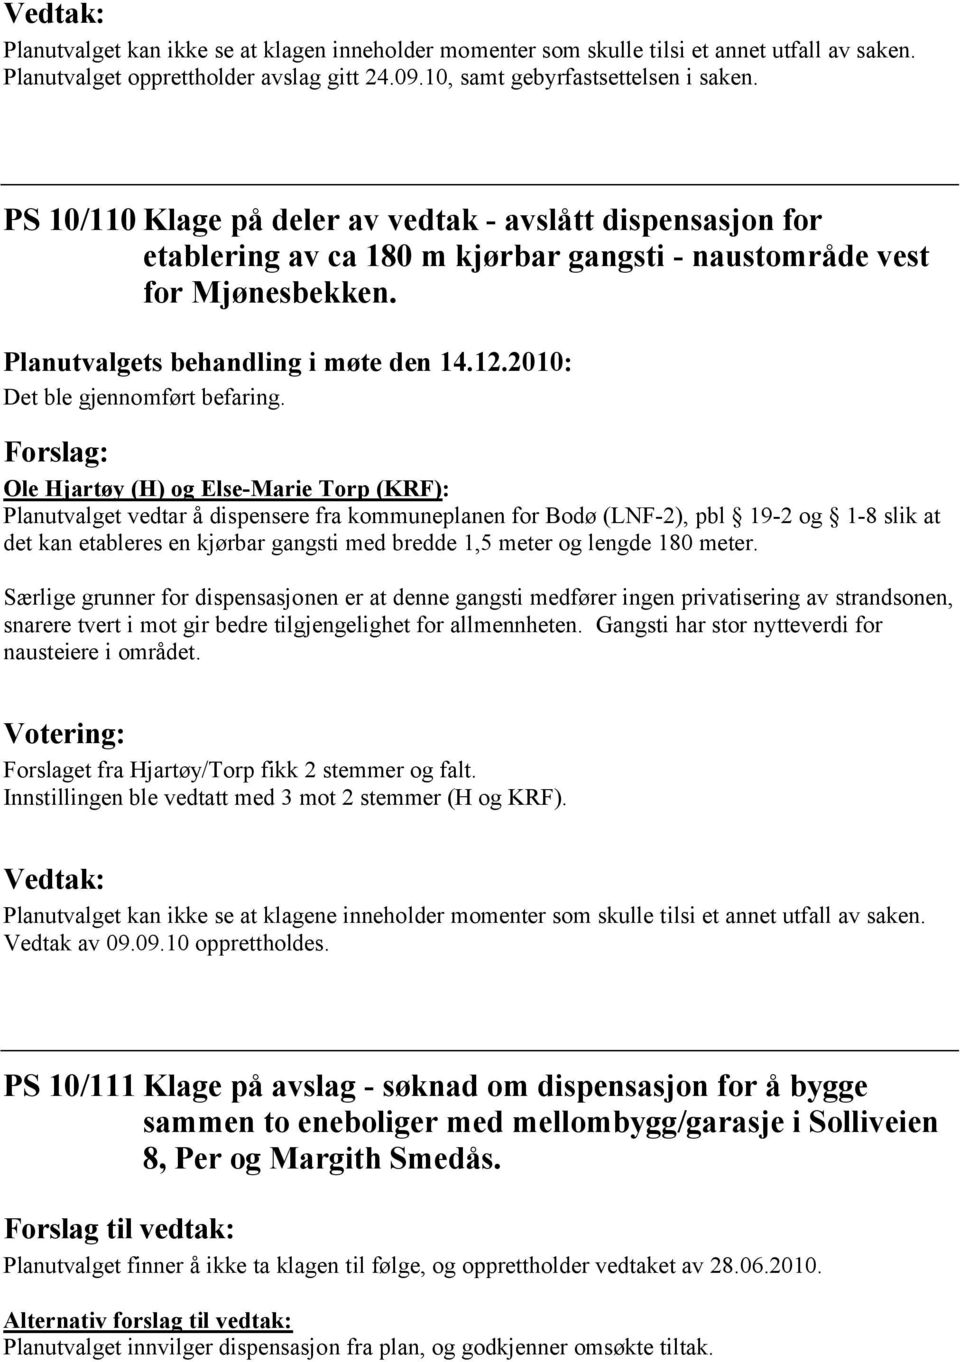 Forslag: Ole Hjartøy (H) og Else-Marie Torp (KRF): Planutvalget vedtar å dispensere fra kommuneplanen for Bodø (LNF-2), pbl 19-2 og 1-8 slik at det kan etableres en kjørbar gangsti med bredde 1,5